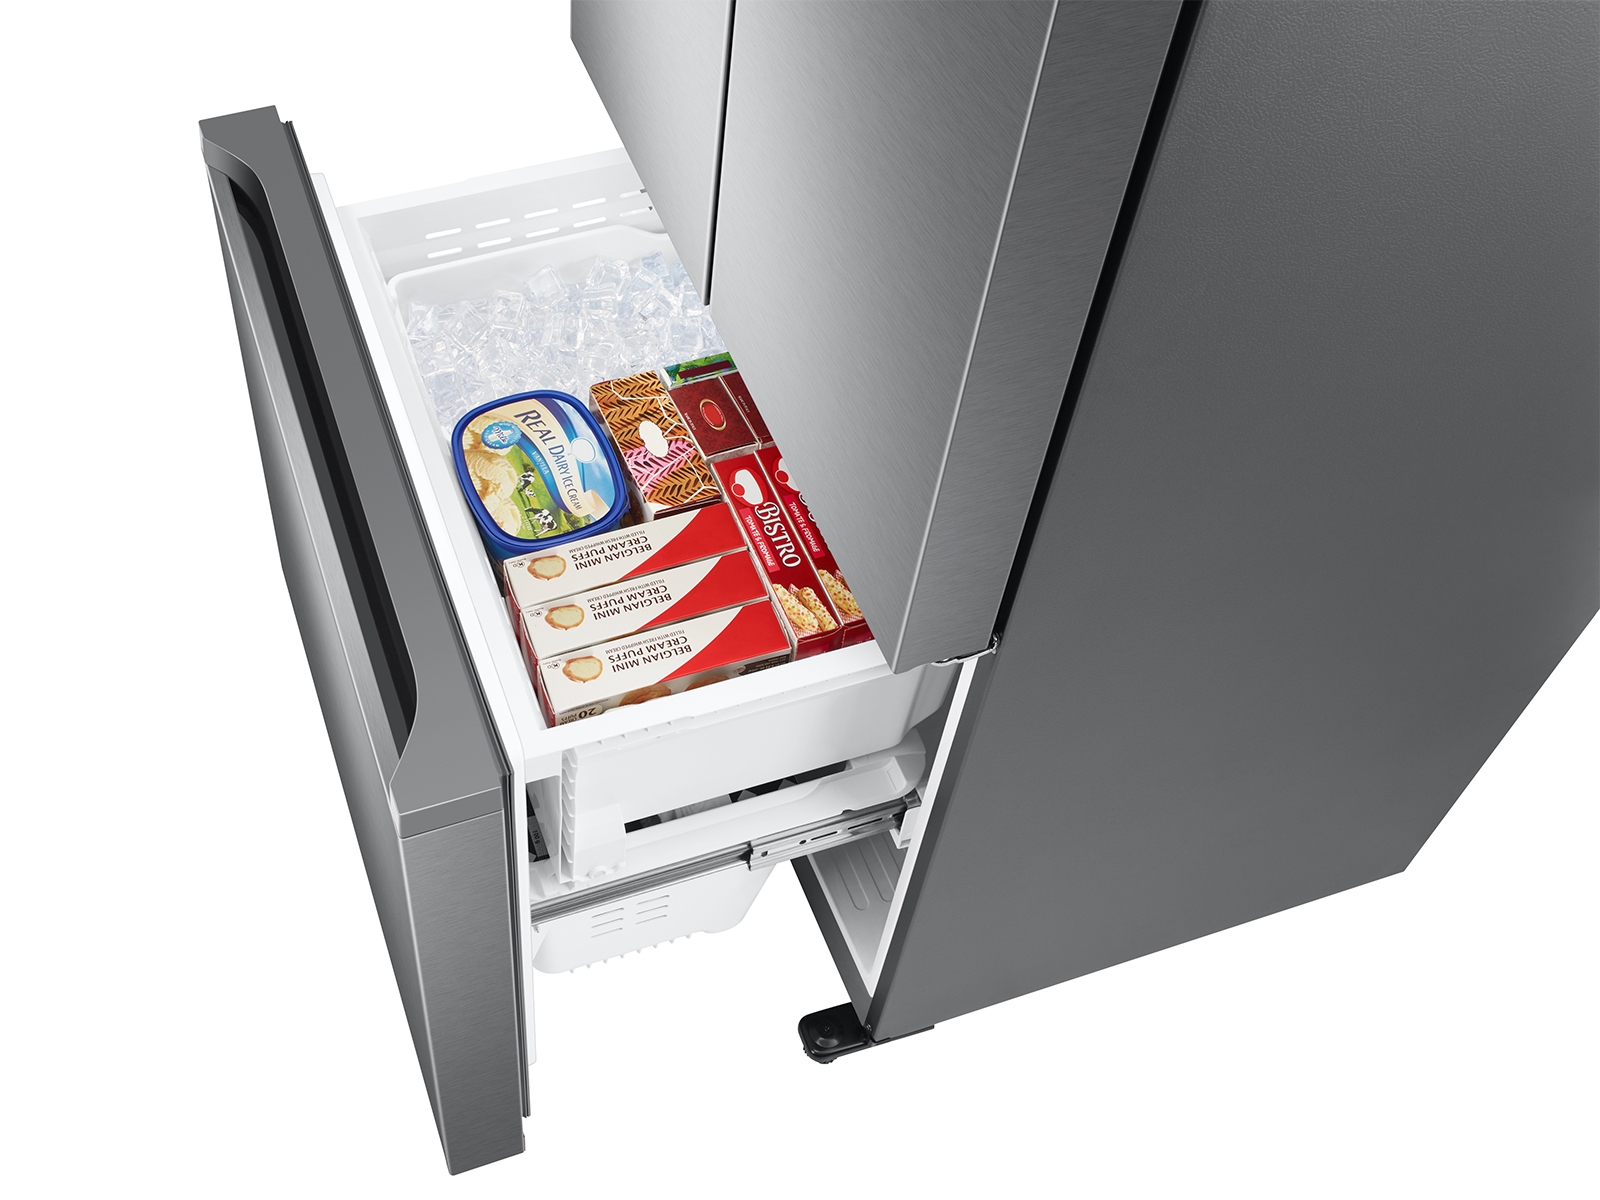 Thumbnail image of 18 cu. ft. Smart Counter Depth 3-Door French Door Refrigerator in Stainless Steel